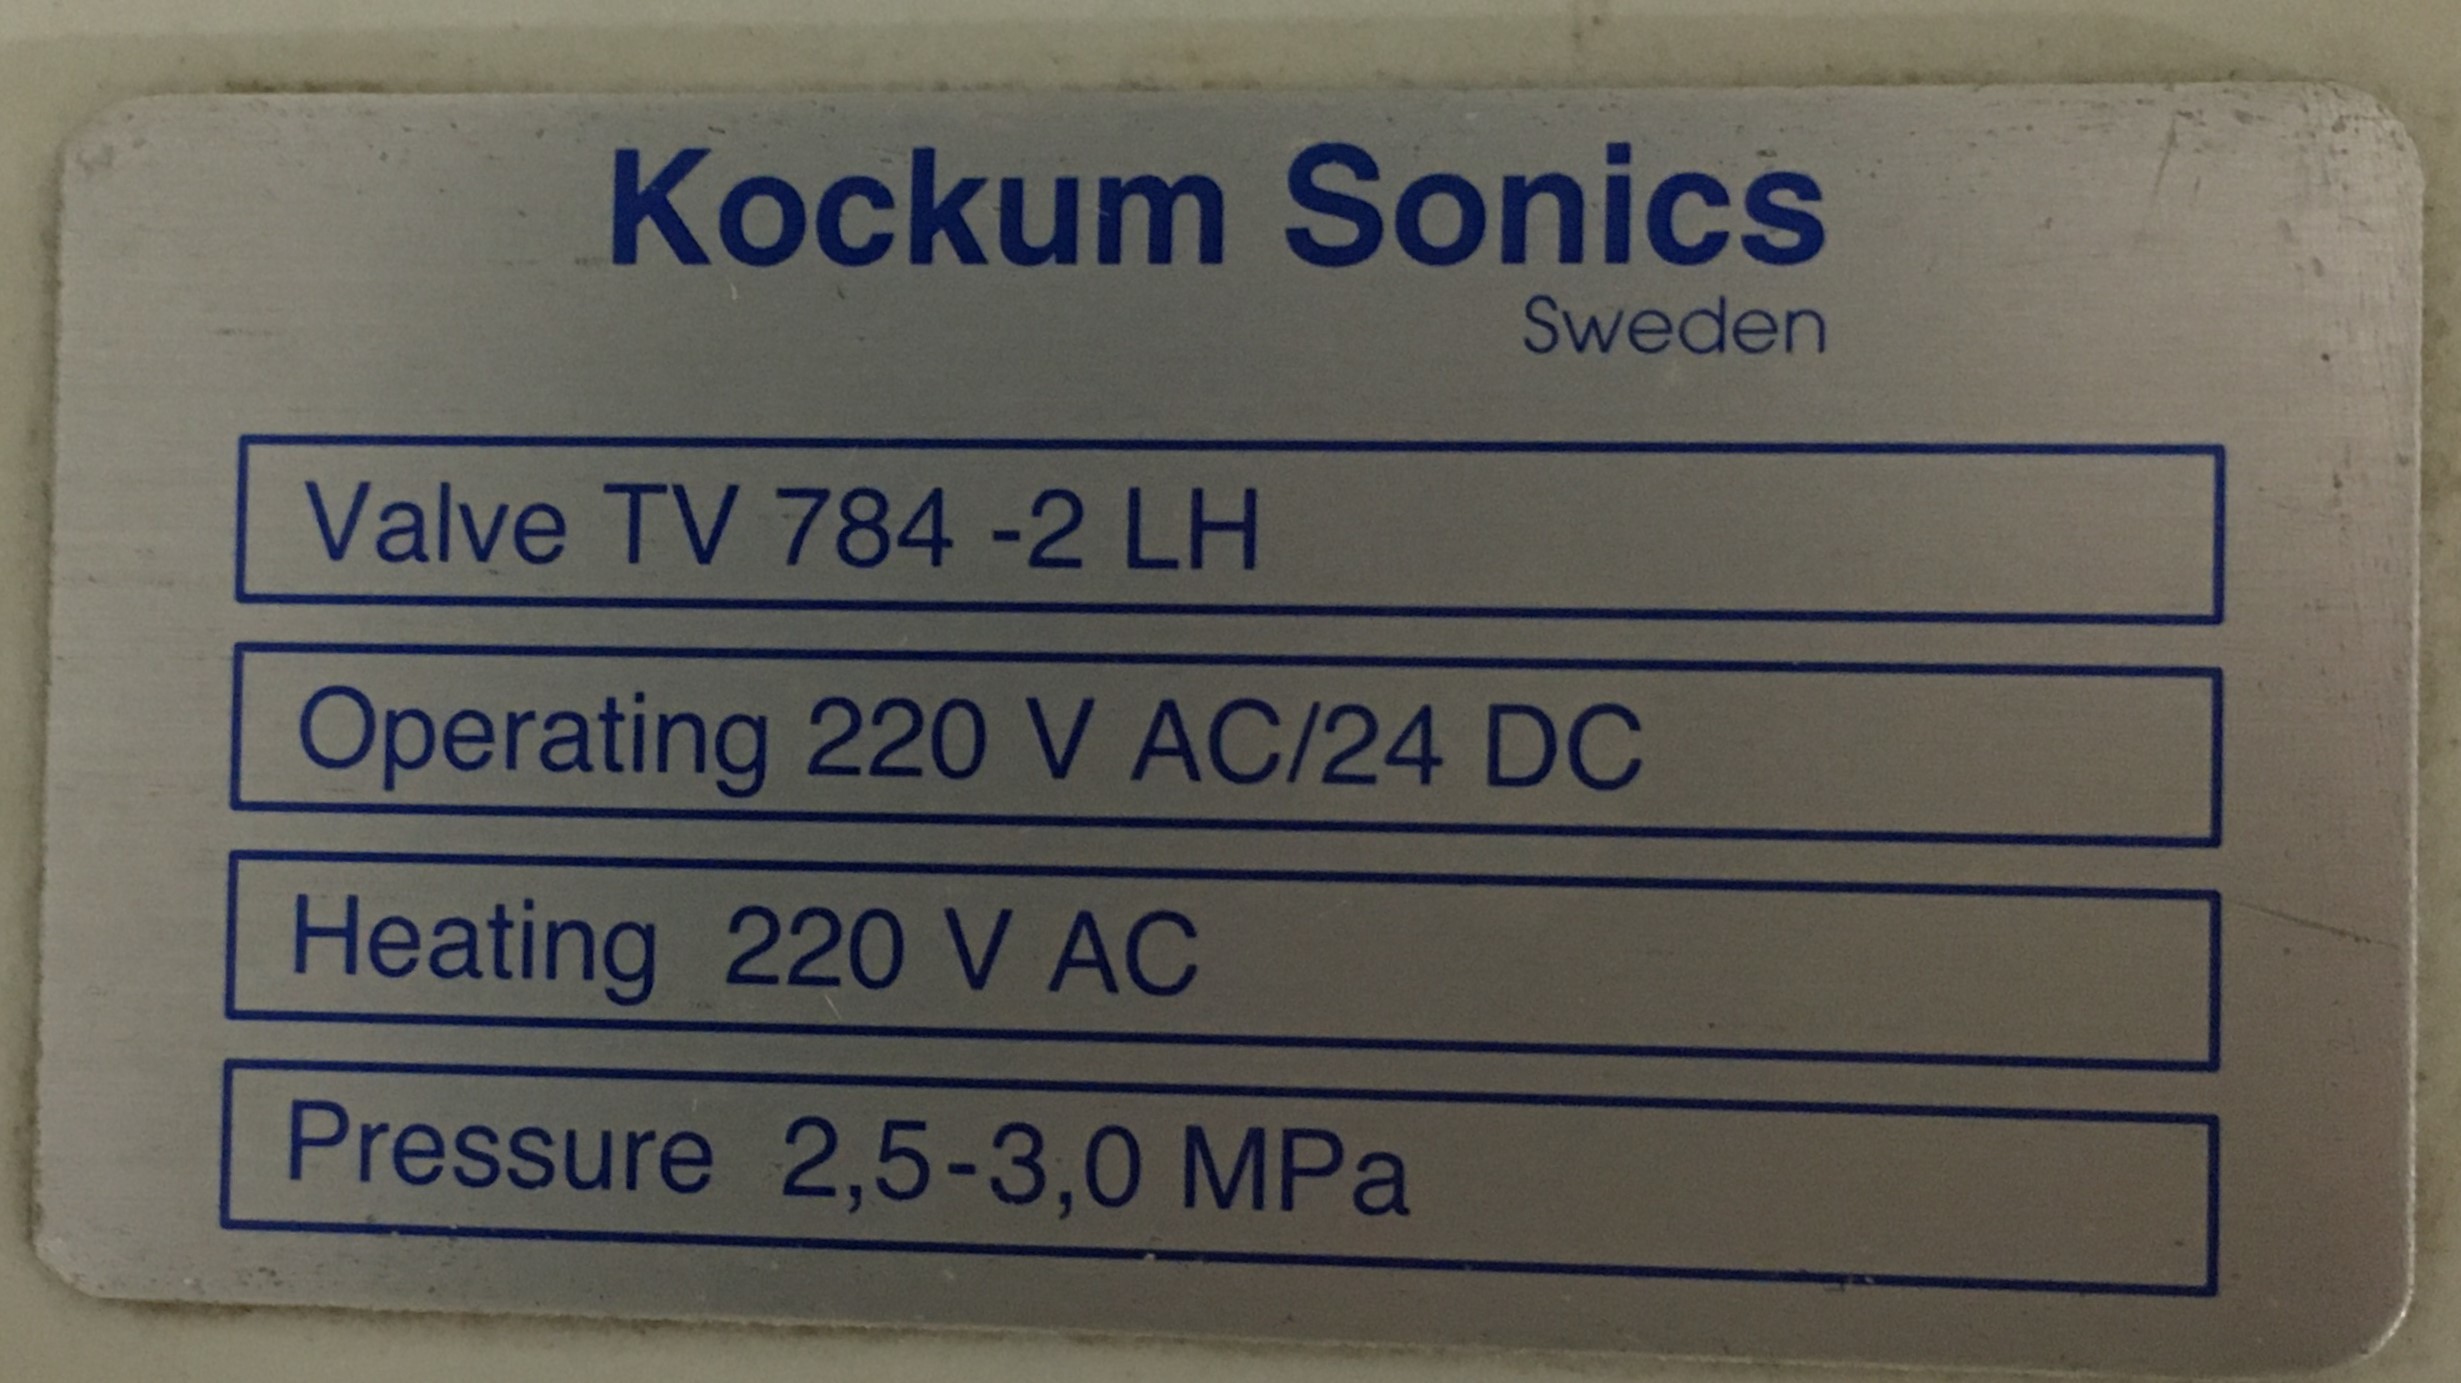 Kockum Sonics Valve Unit TV 784-2-LH For Tyfon whistle 30 Bar Pressure